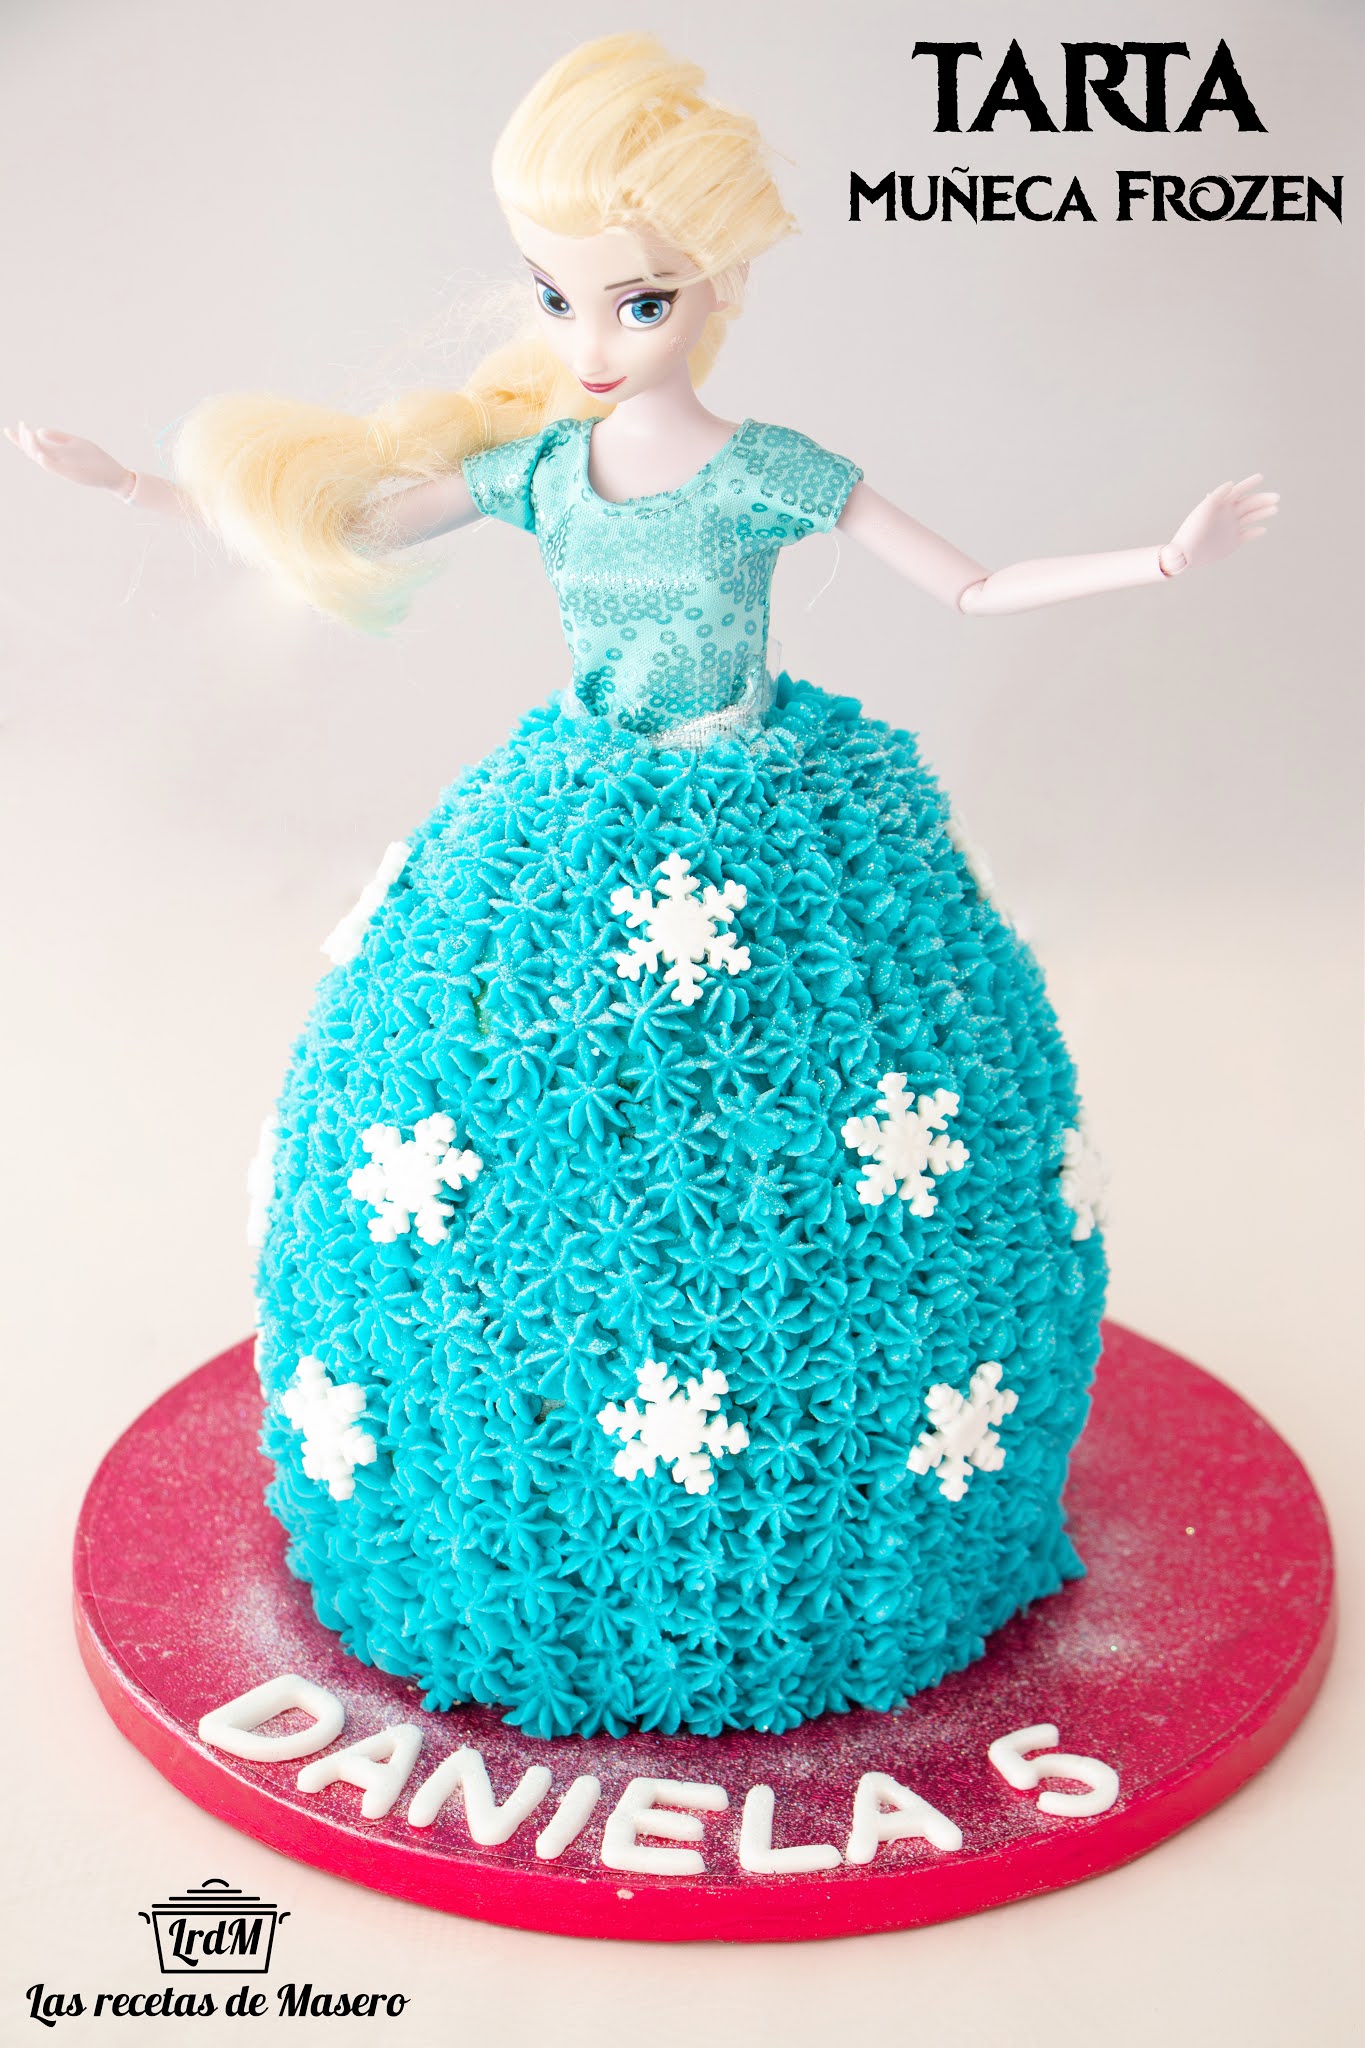 Decoración comestible para tarta de Frozen 2 Elsa, Anna y Olaf